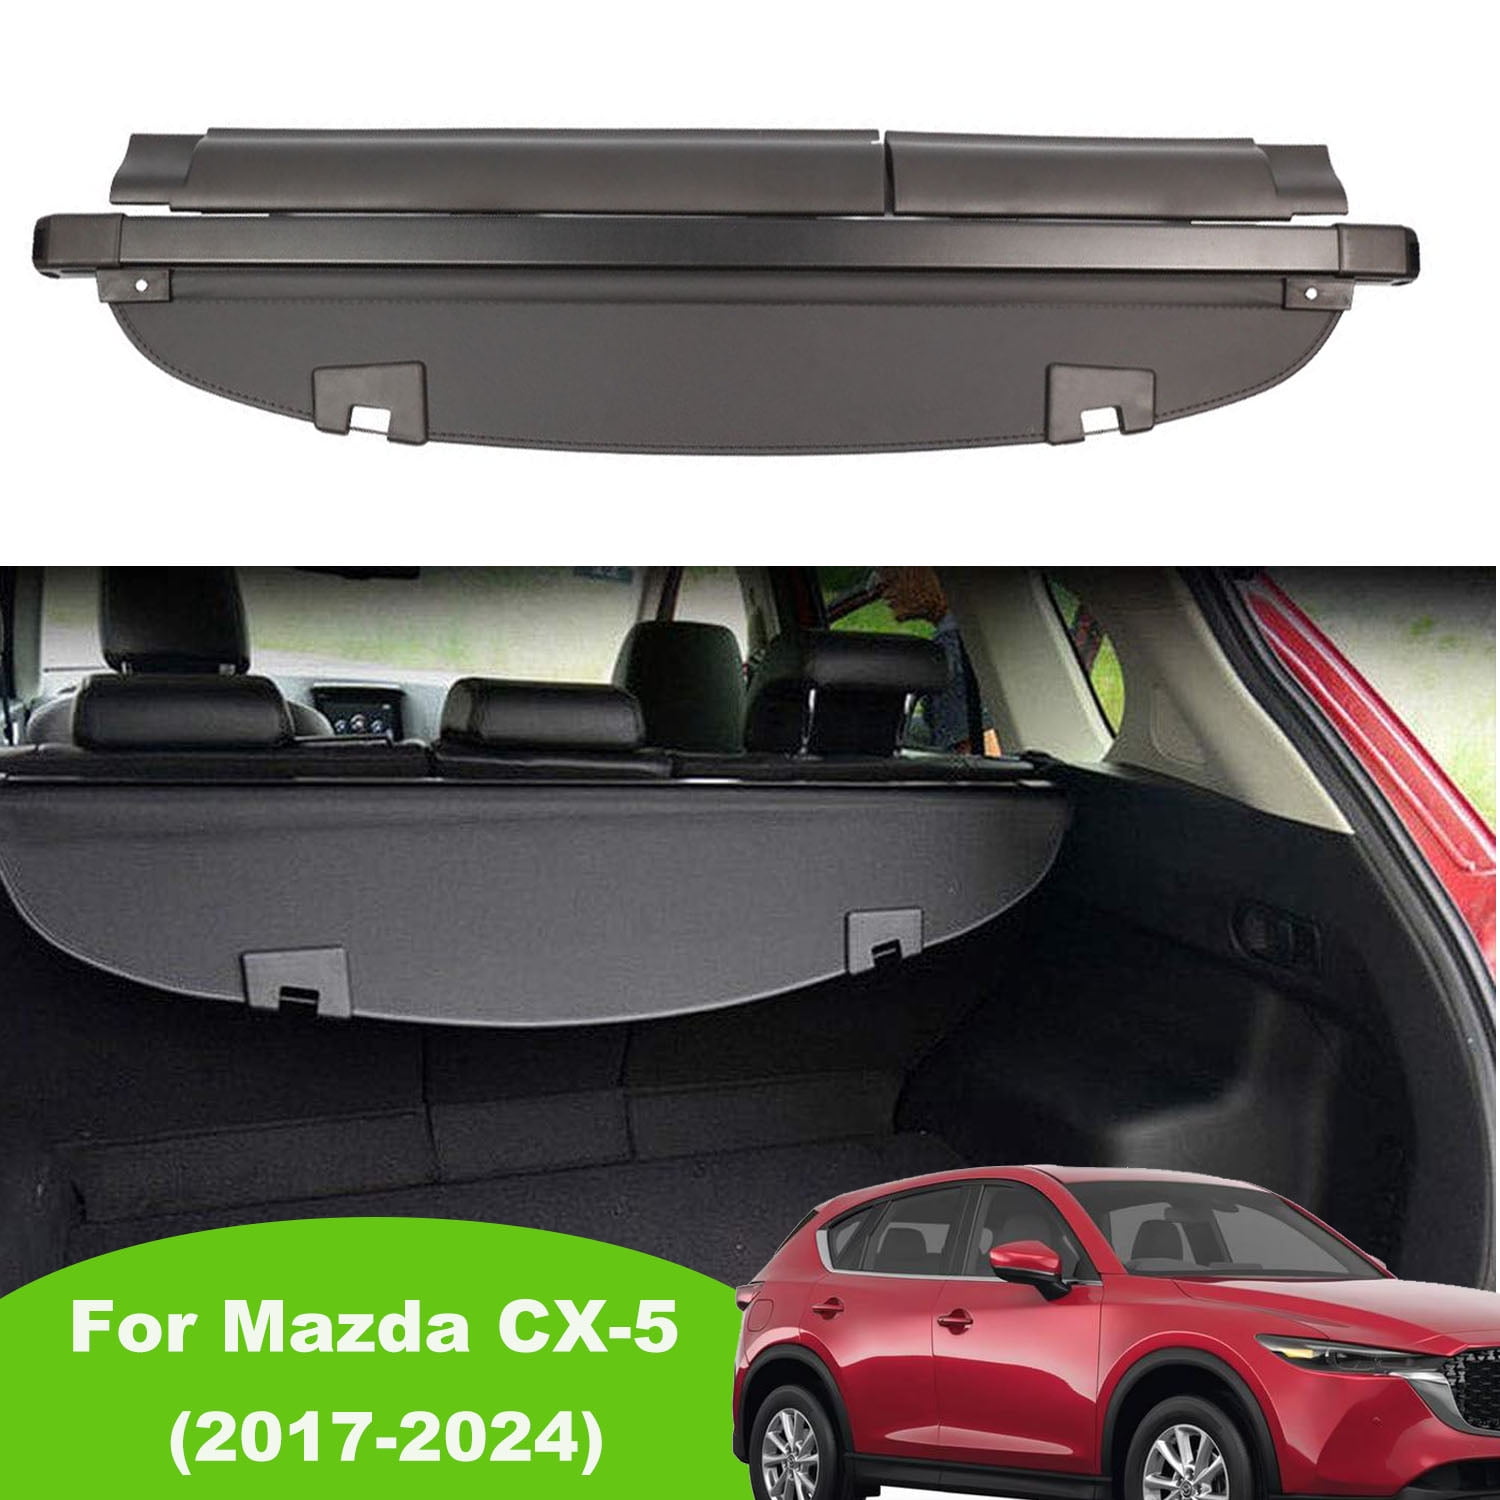 Cover CX5 Rear Privacy Black Trunk Cover Shield 2019 CX-5 2017-2024 Mazda Security 2018 for 2020 2024 SUV 2023 2022 Cargo Accessory Retractable Mazda CX-5 2021 2017 Fit